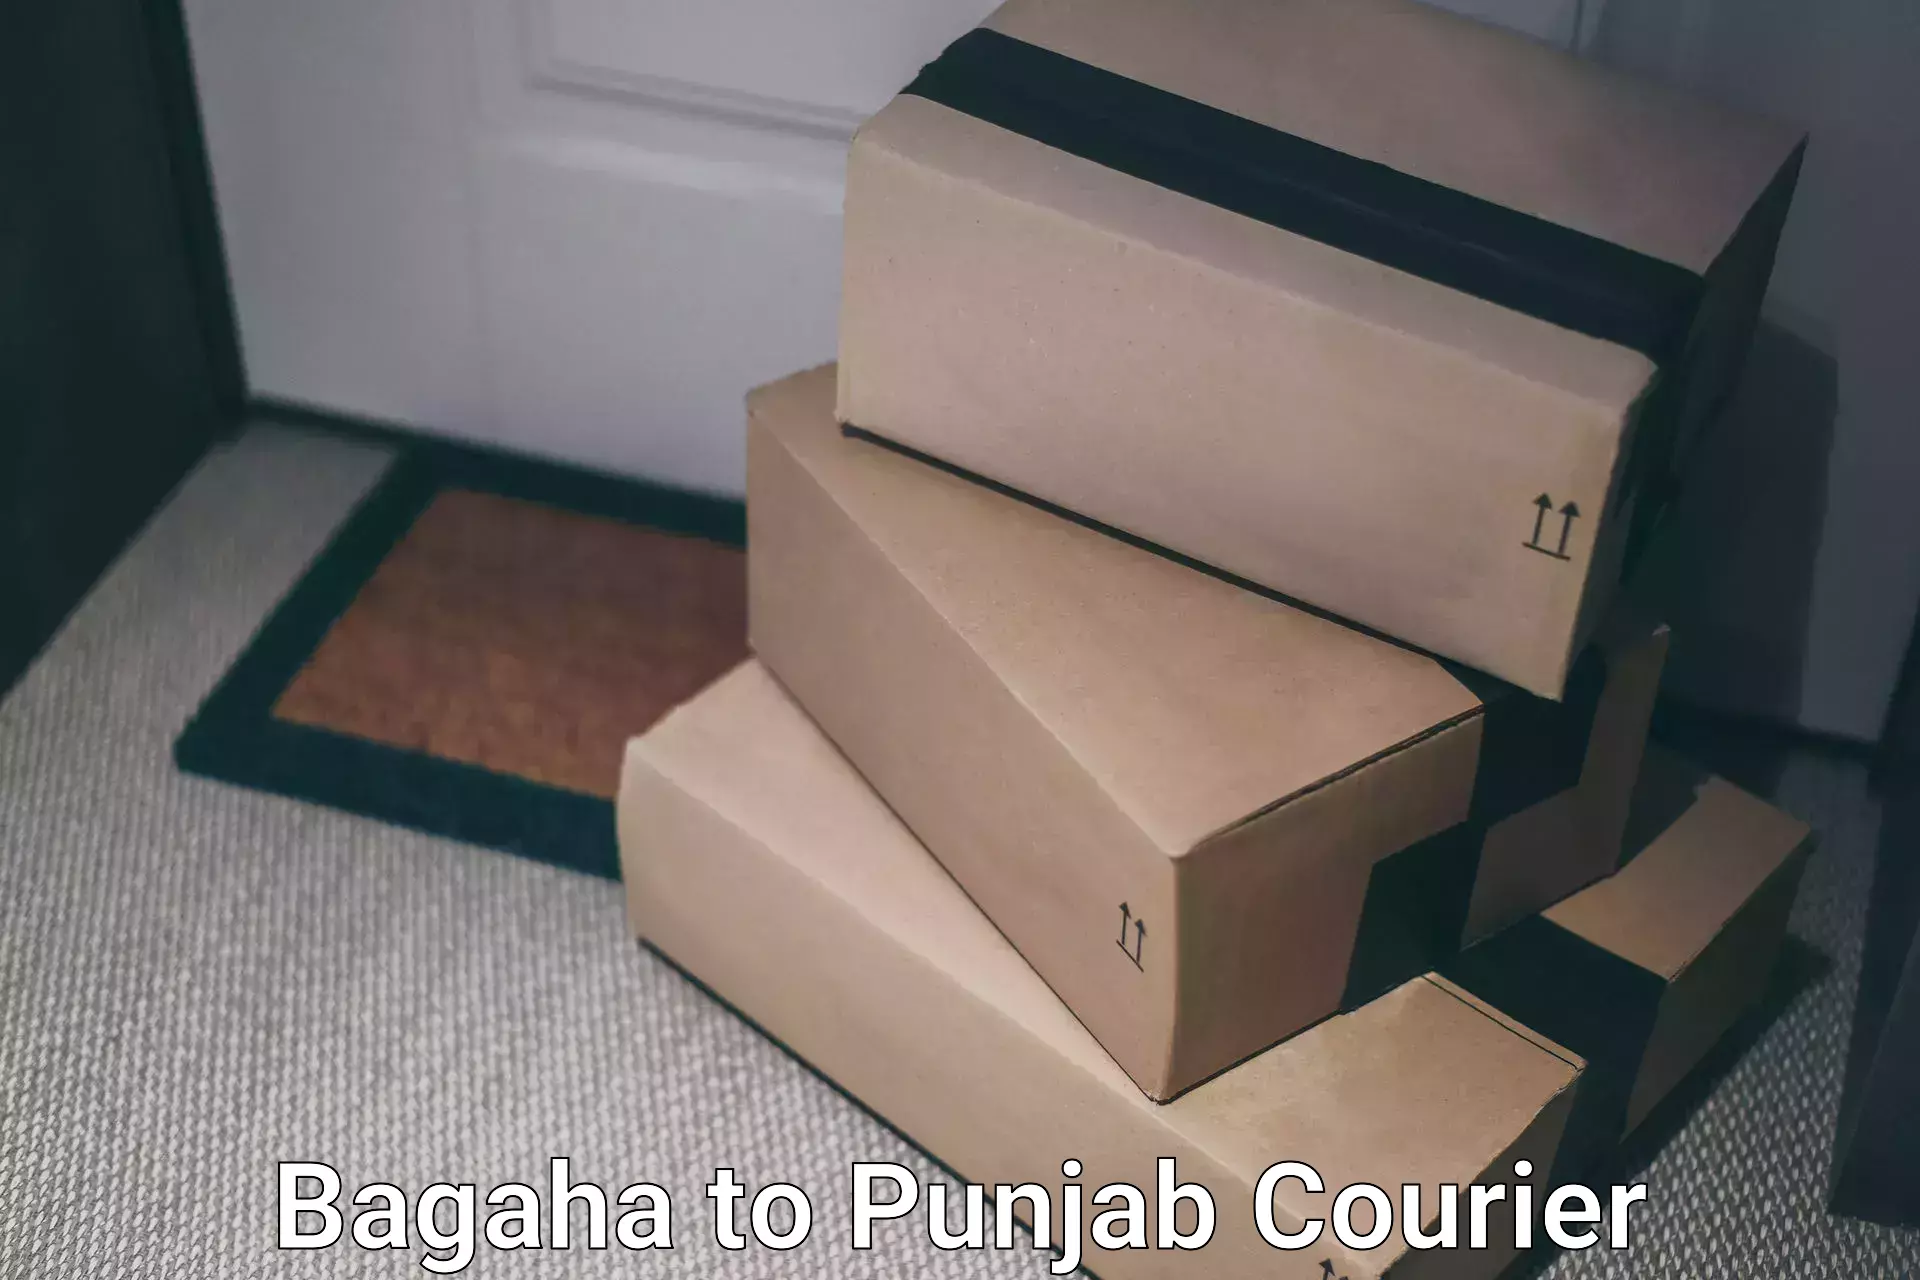 Budget-friendly shipping Bagaha to Amritsar